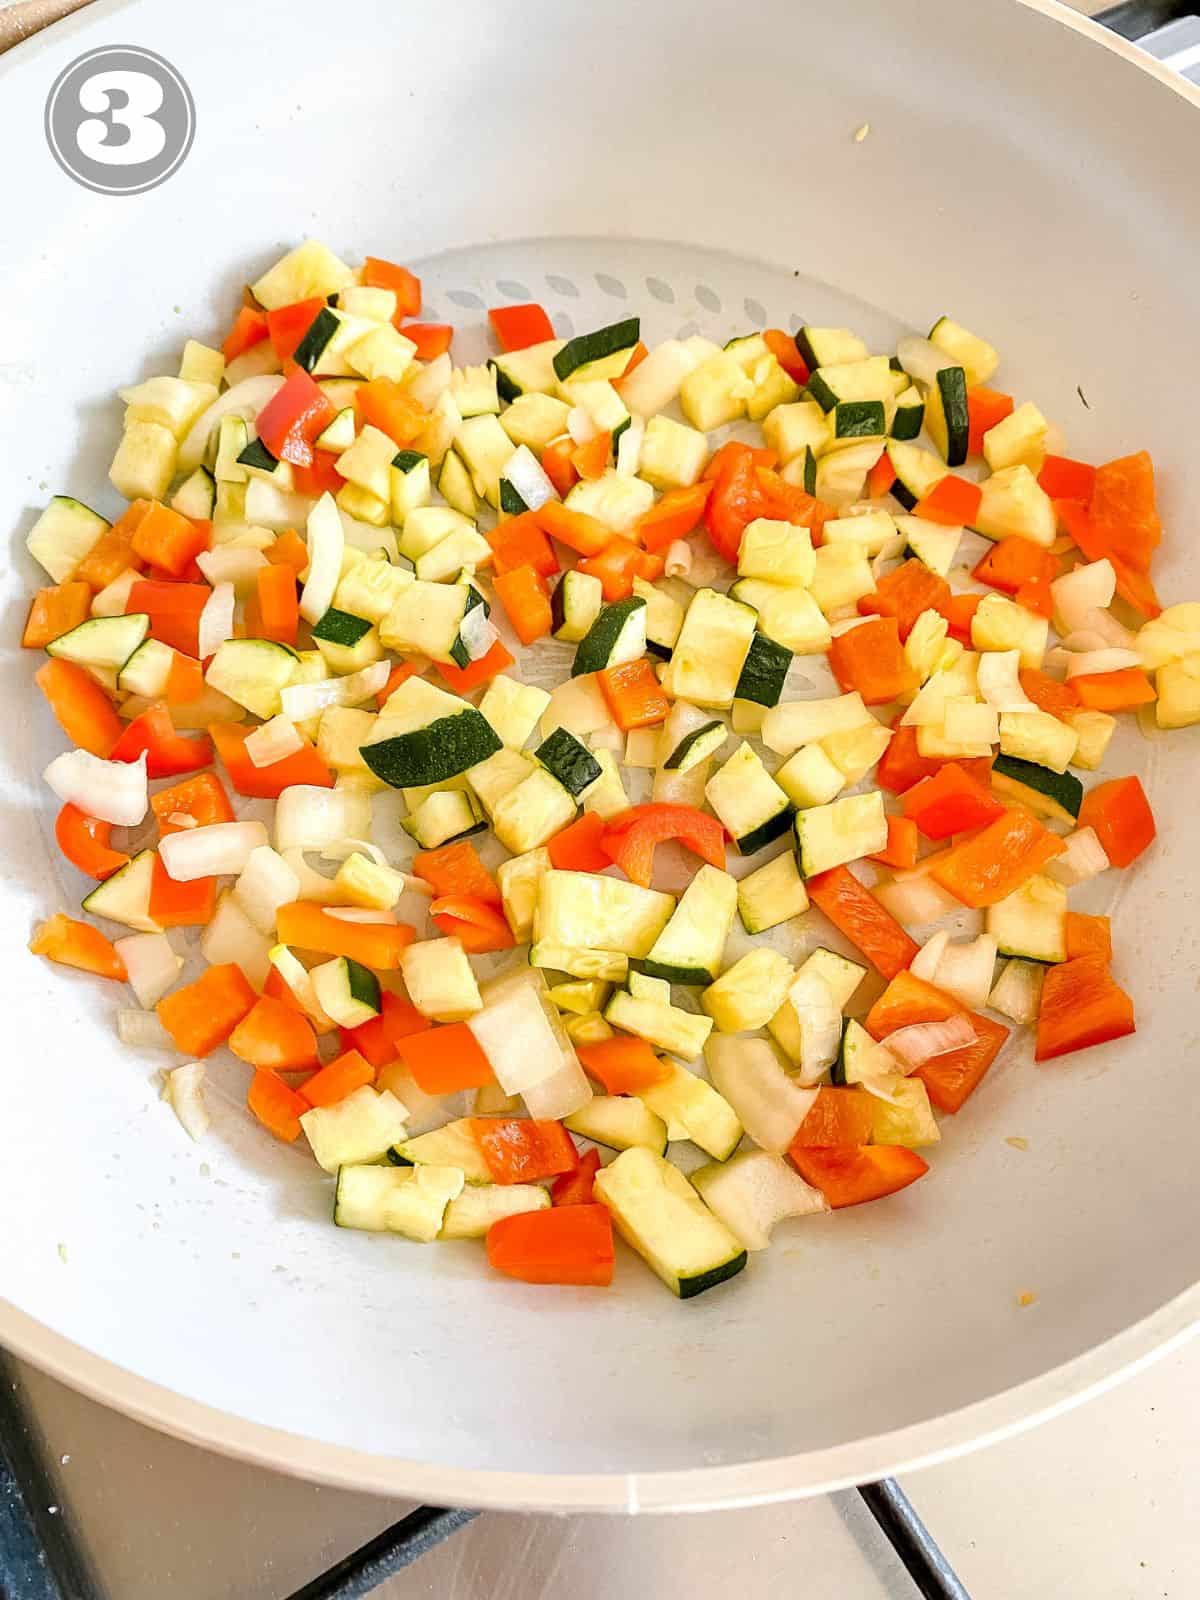 diced vegetables in a light grey skillet.